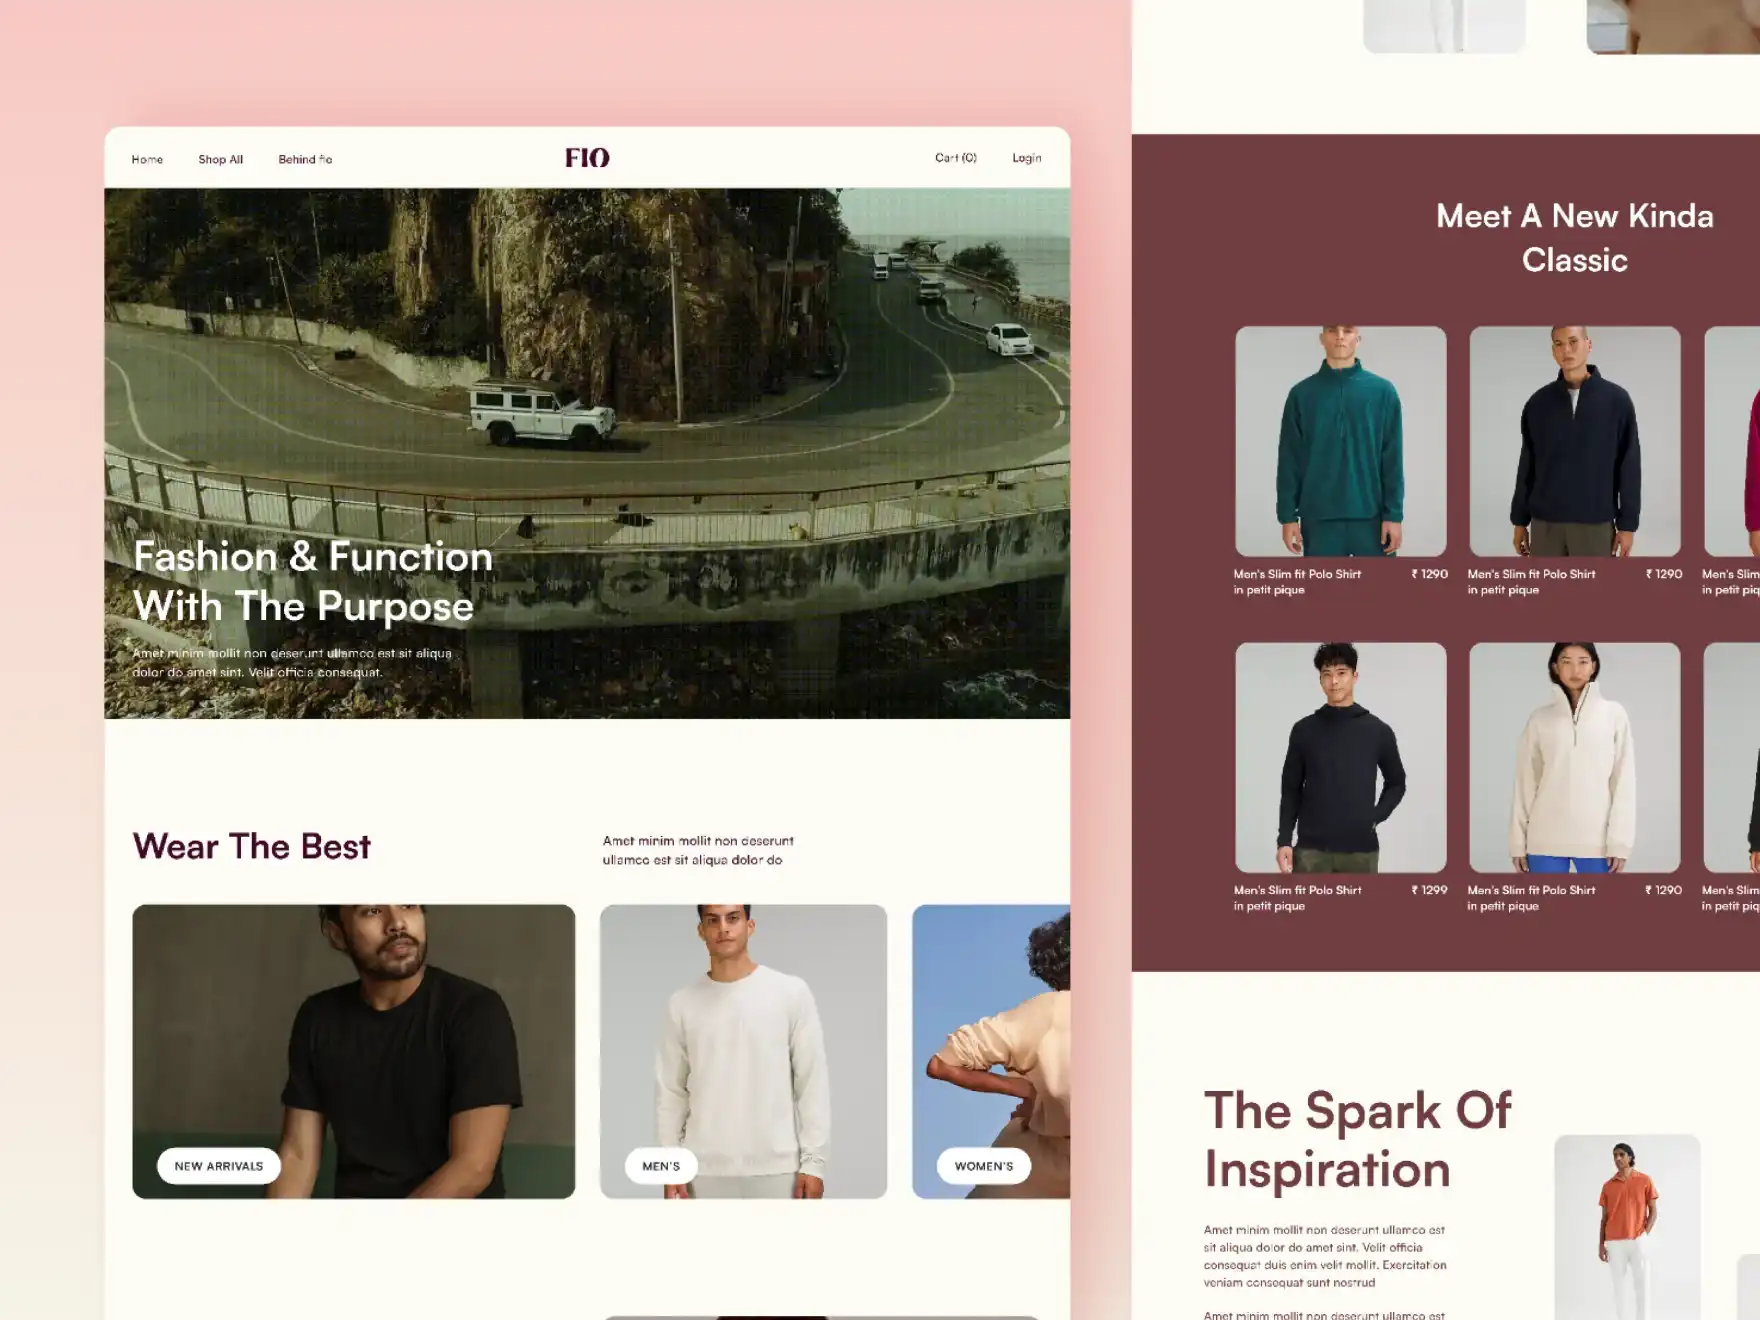 Landing Page Of D2C Fashion E-Commerce Platform